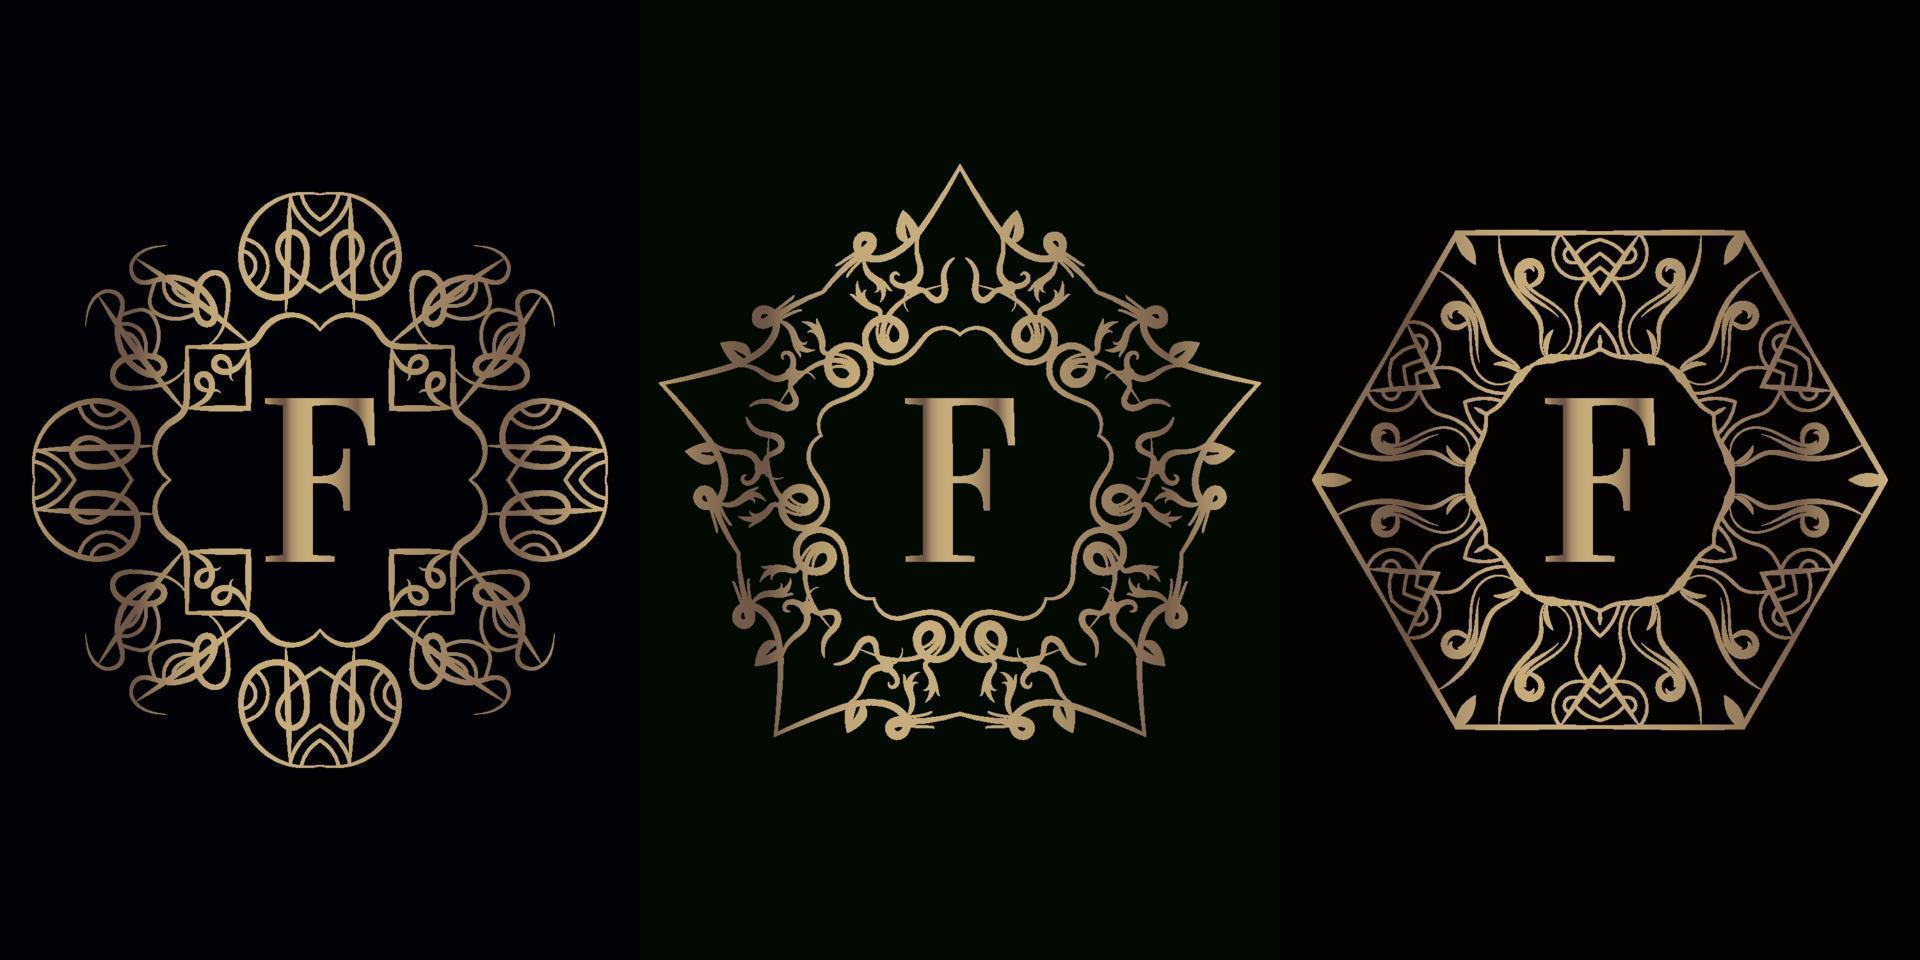 colección de logotipo f inicial con marco de adorno de mandala de lujo vector